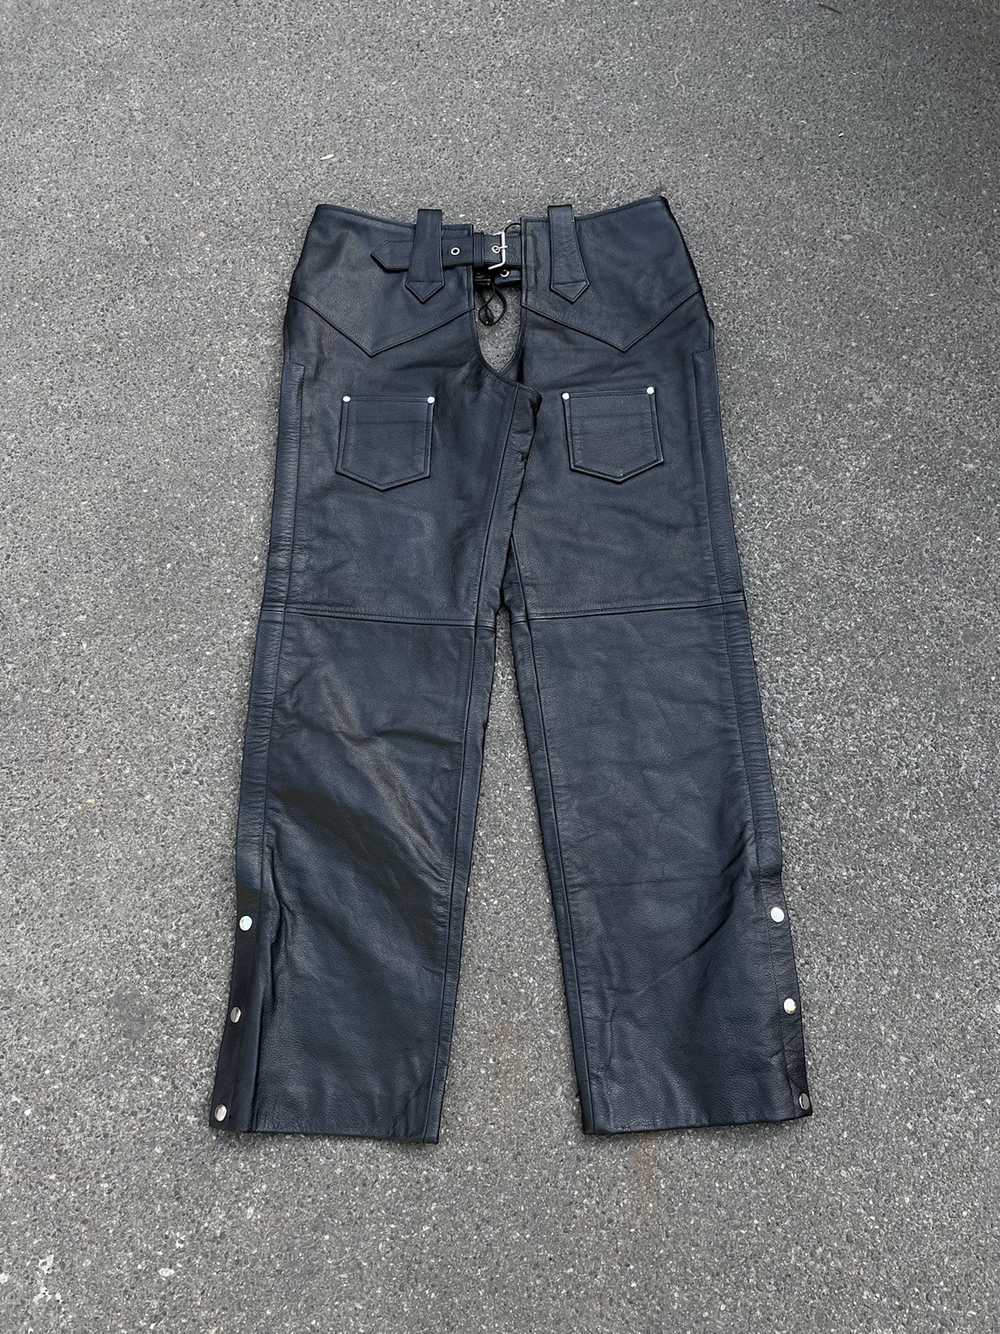 Biker Jeans × Genuine Leather × Vintage Vintage G… - image 2